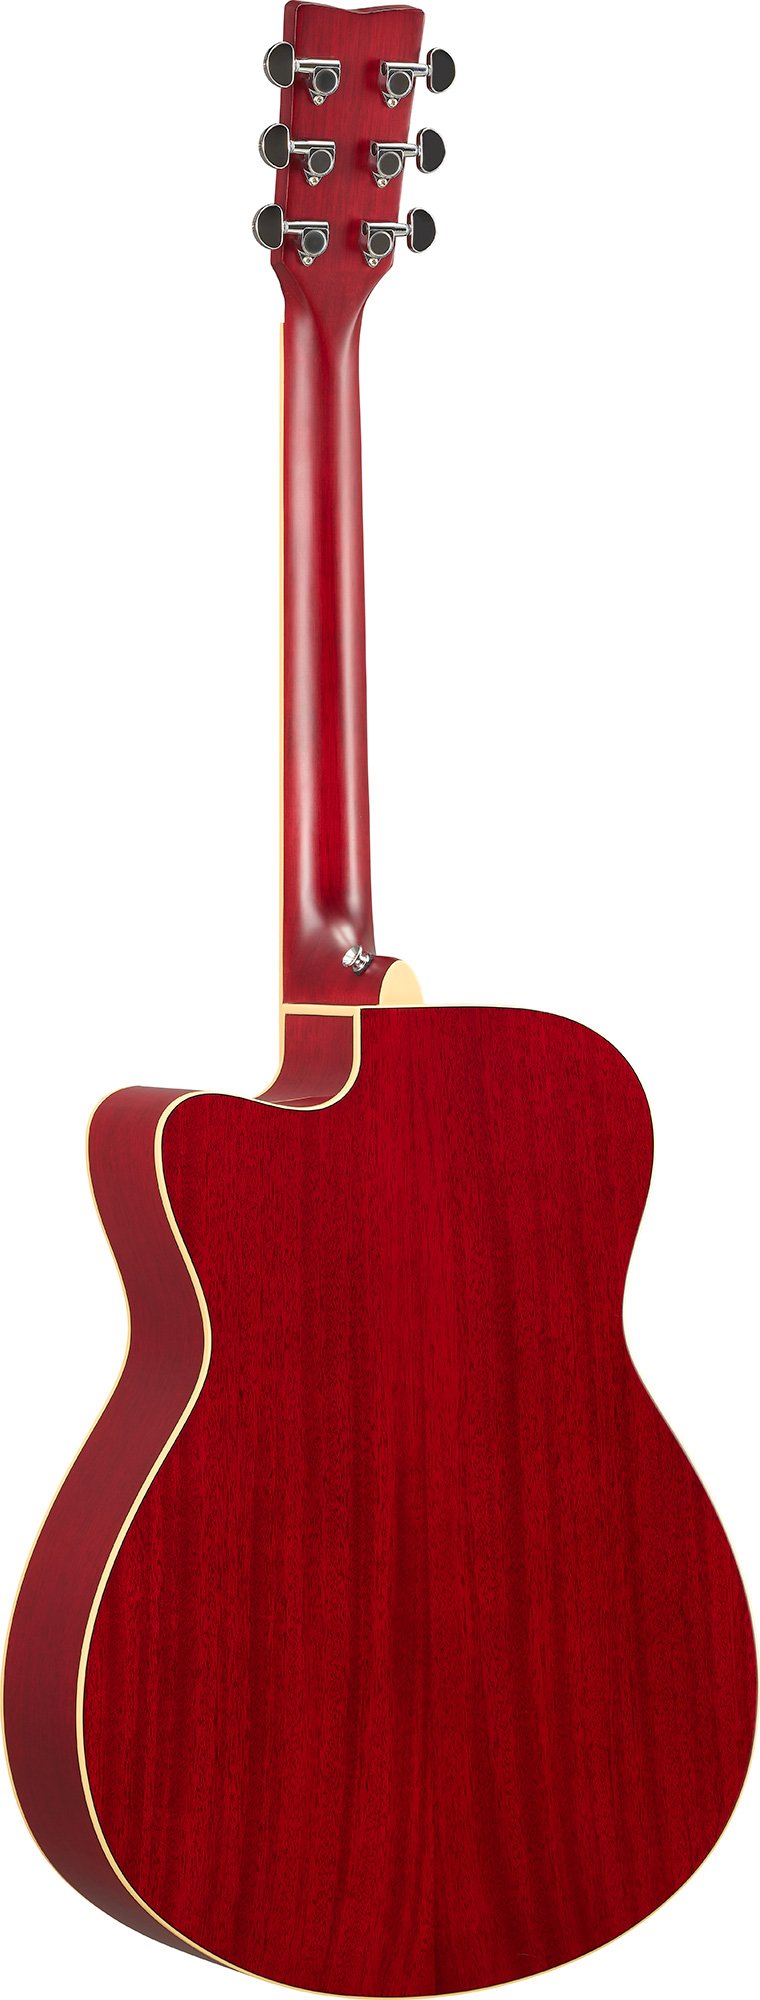 Yamaha Fsc-ta Transacoustic Cutaway Epicea Acajou Rw - Ruby Red - Westerngitarre & electro - Variation 1